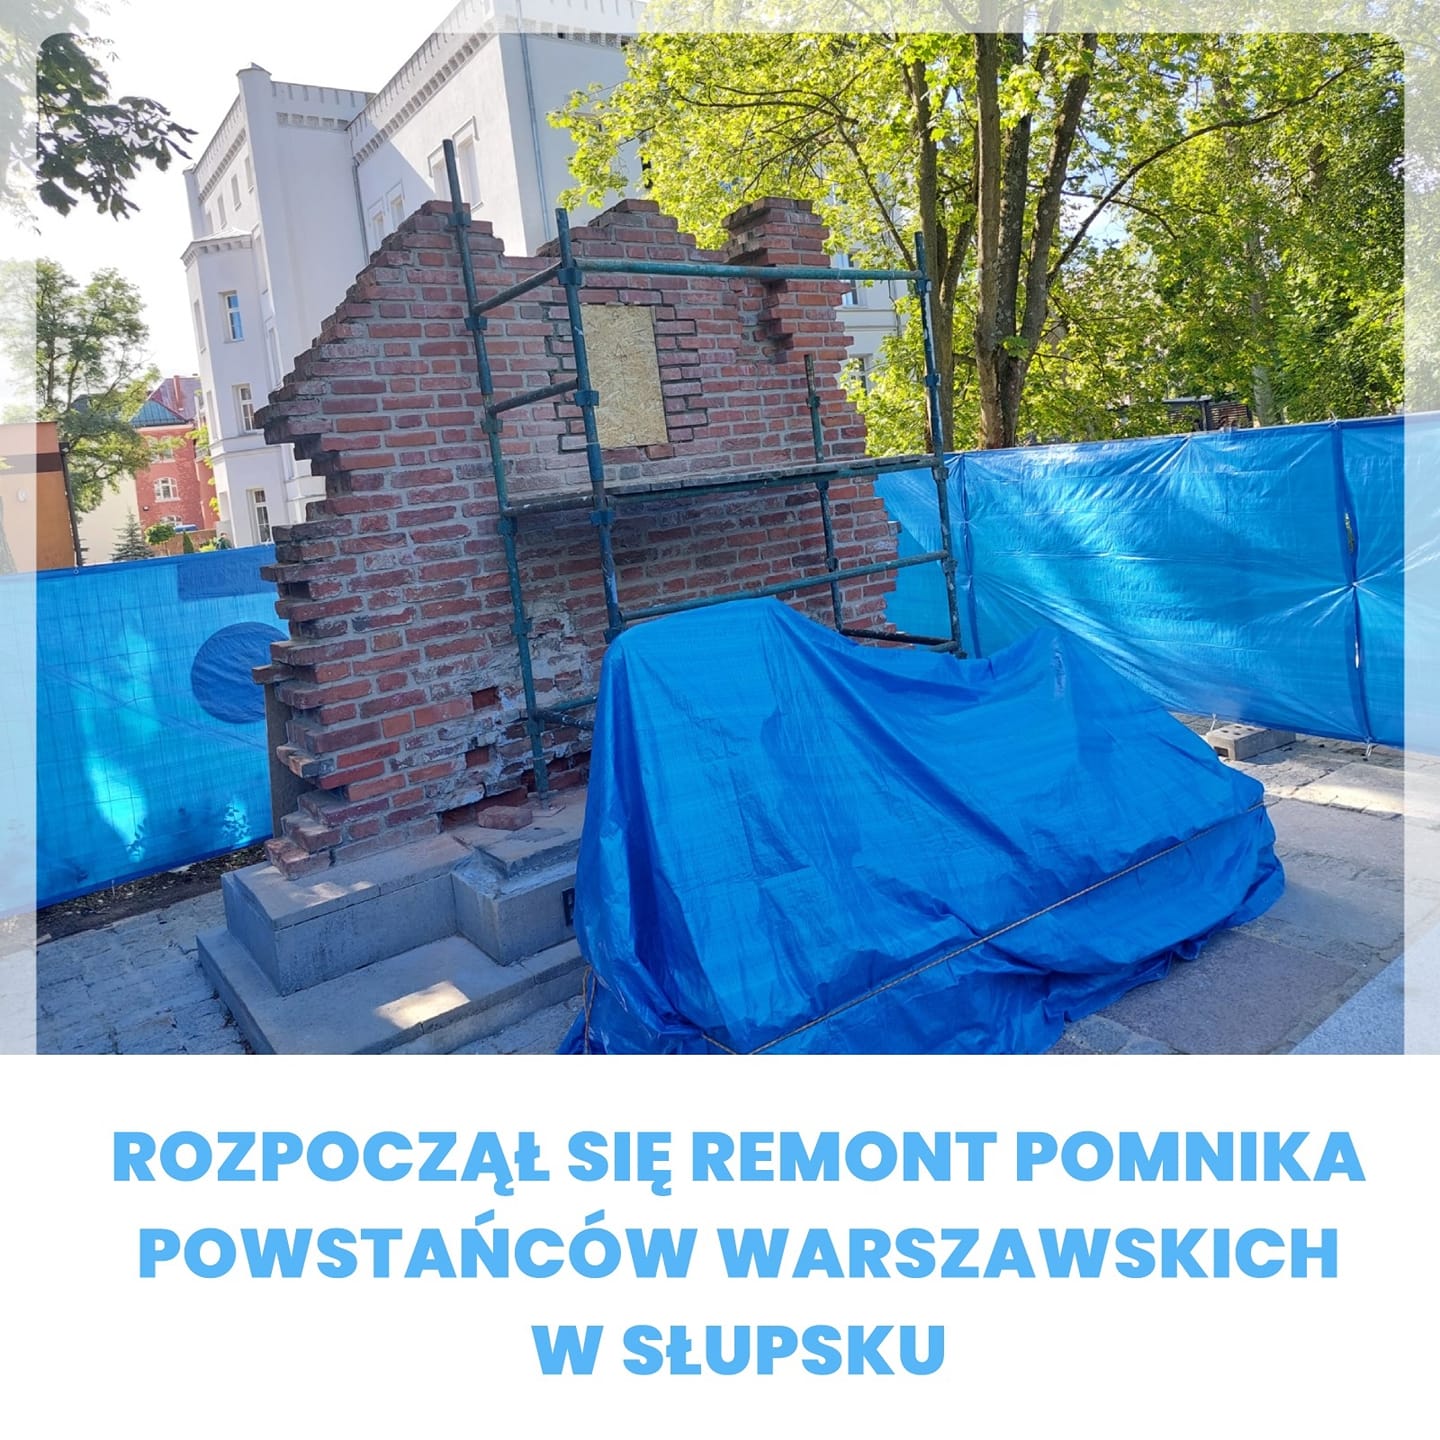 Rozpoczął się remont pierwszego w Polsce pomnika Powstańców Warszawskich w Słupsku